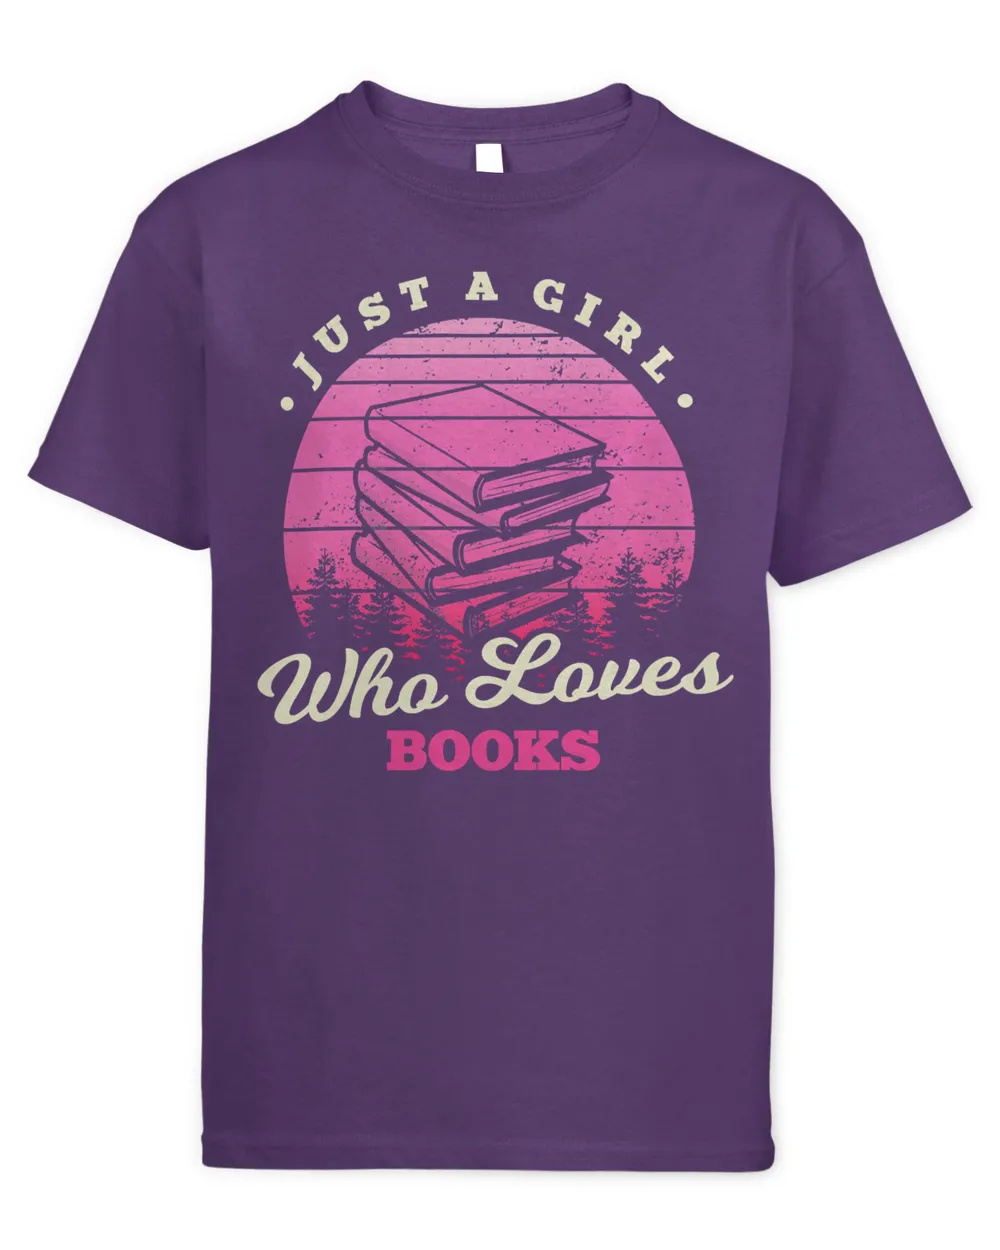 Book Reader Girl Loves Books 546 booked Books Reading Fan